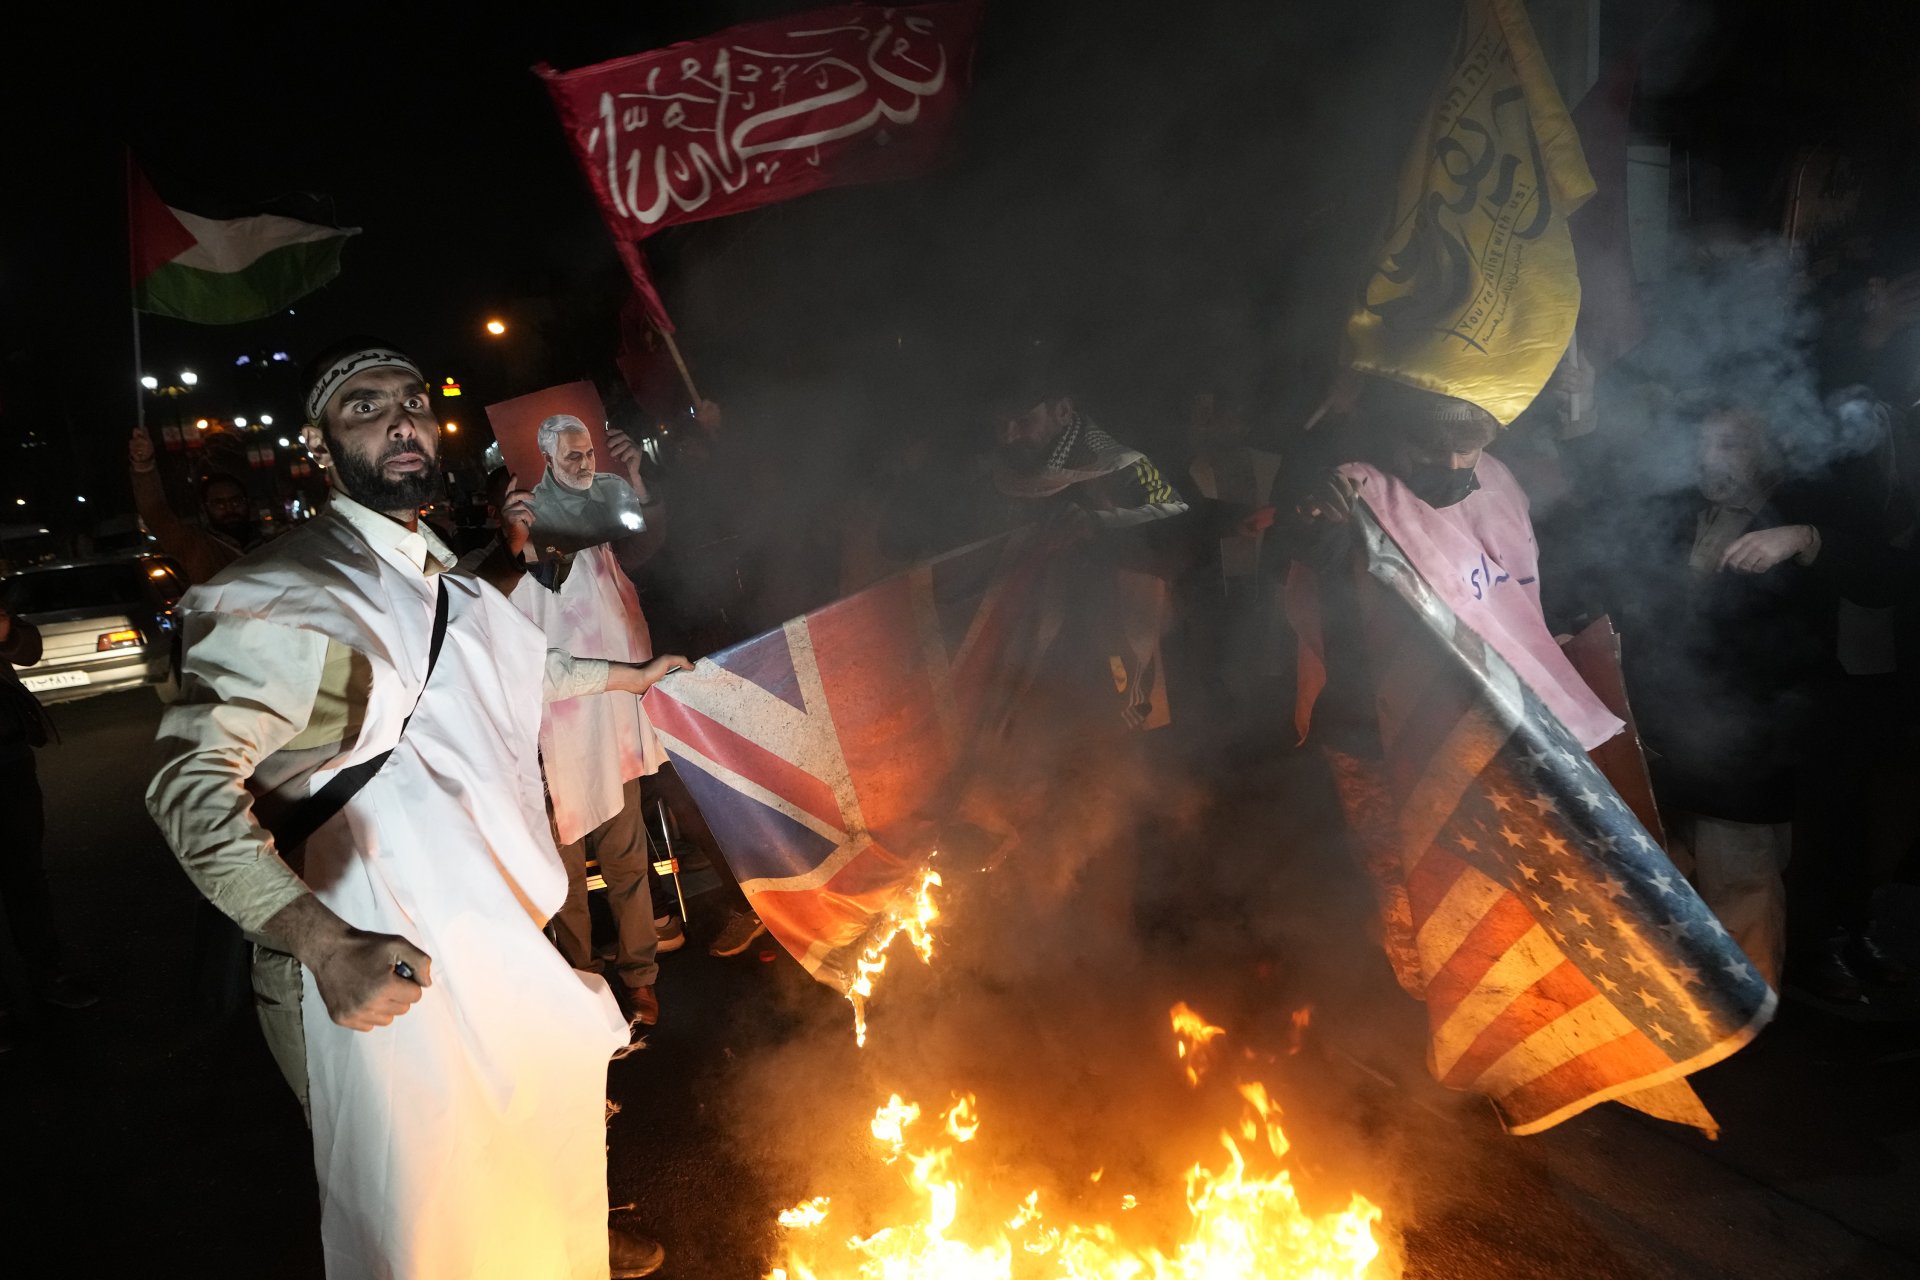 рански демонстранти изгарят в Техеран изображения на американското и британското знаме при протест срещу военните удари на САЩ и Великобритания срещу подкрепяните от Иран йеменски бунтовници хуси, 12 януари 2024 г.